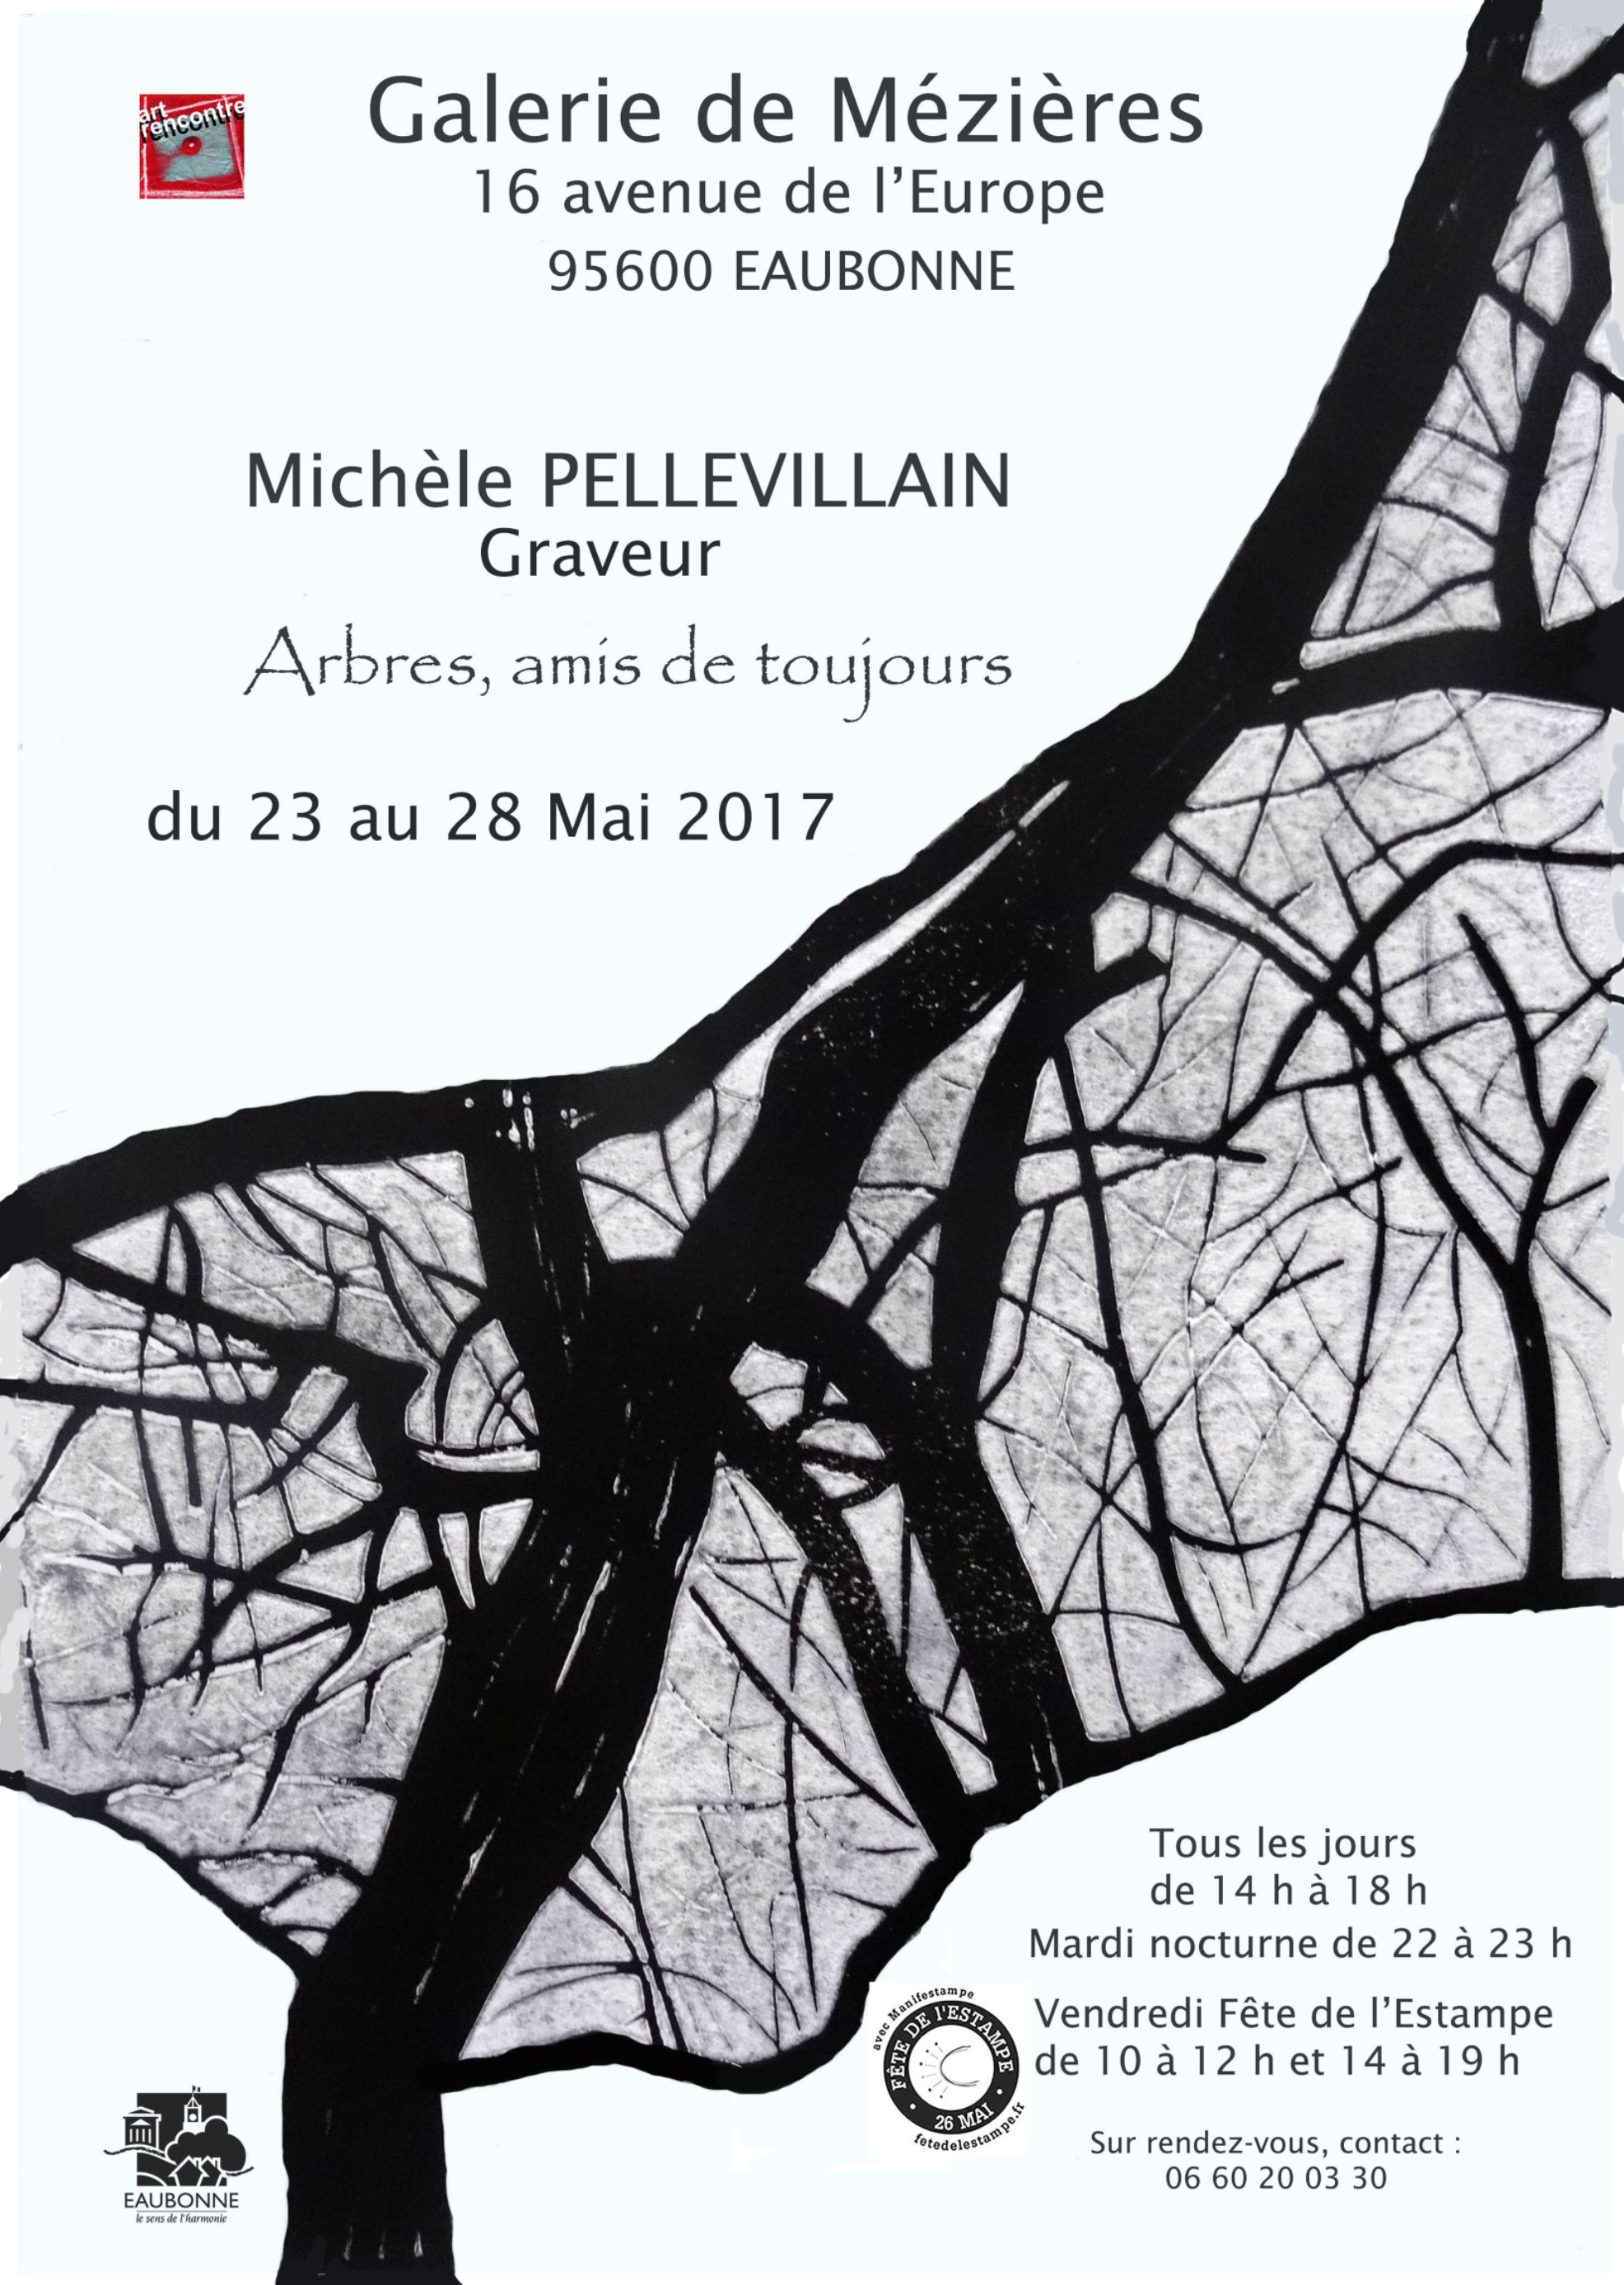 Exposition de Michèle Pellevillain